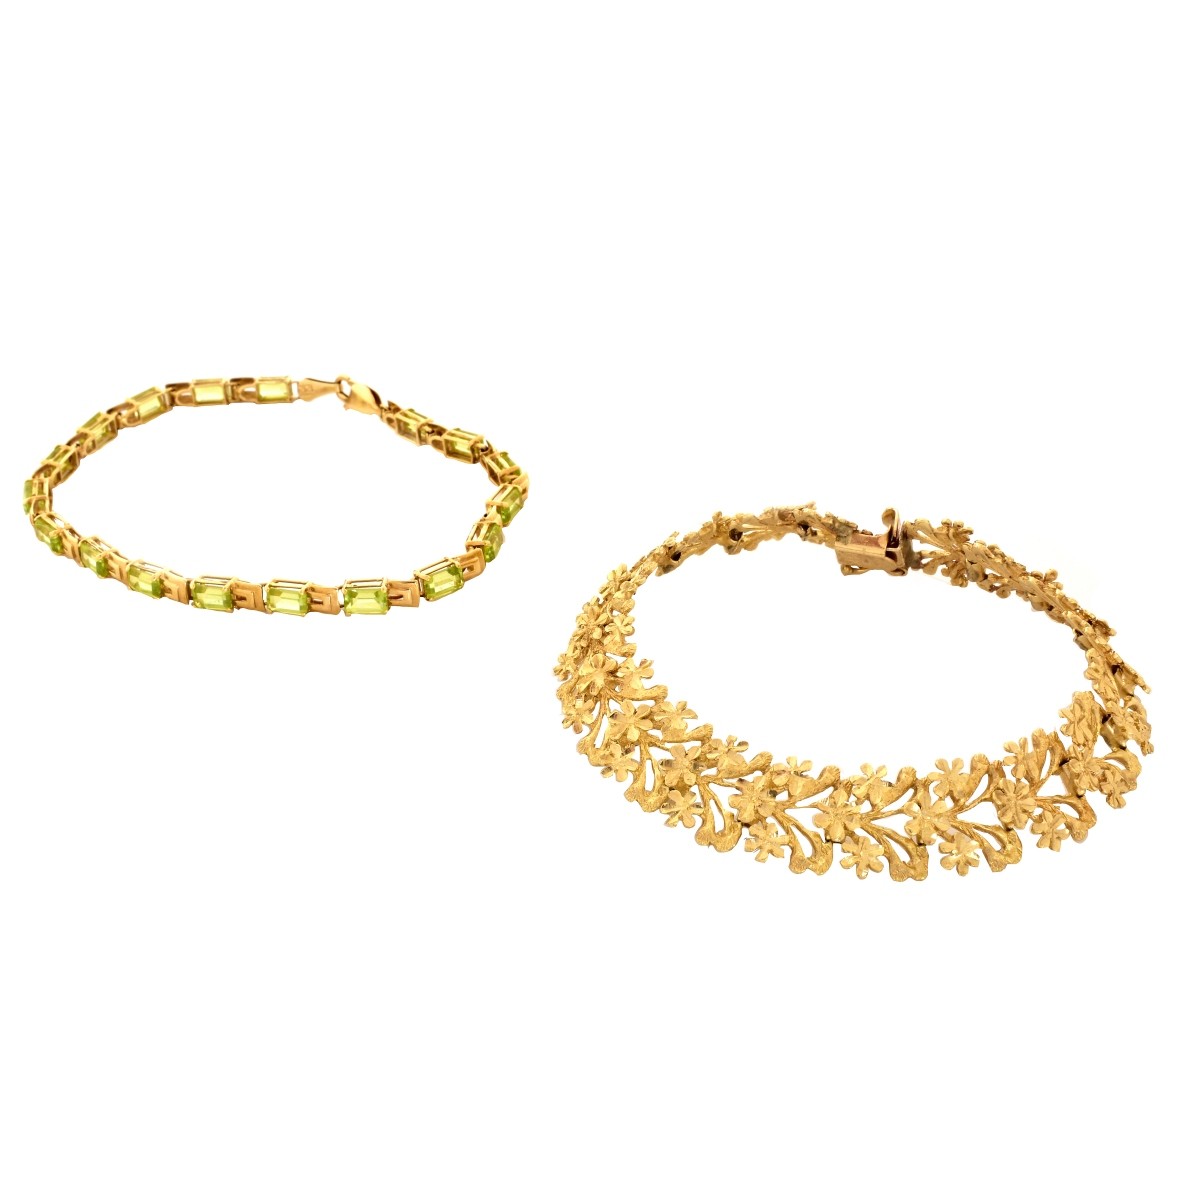 Two 14K Gold Bracelets